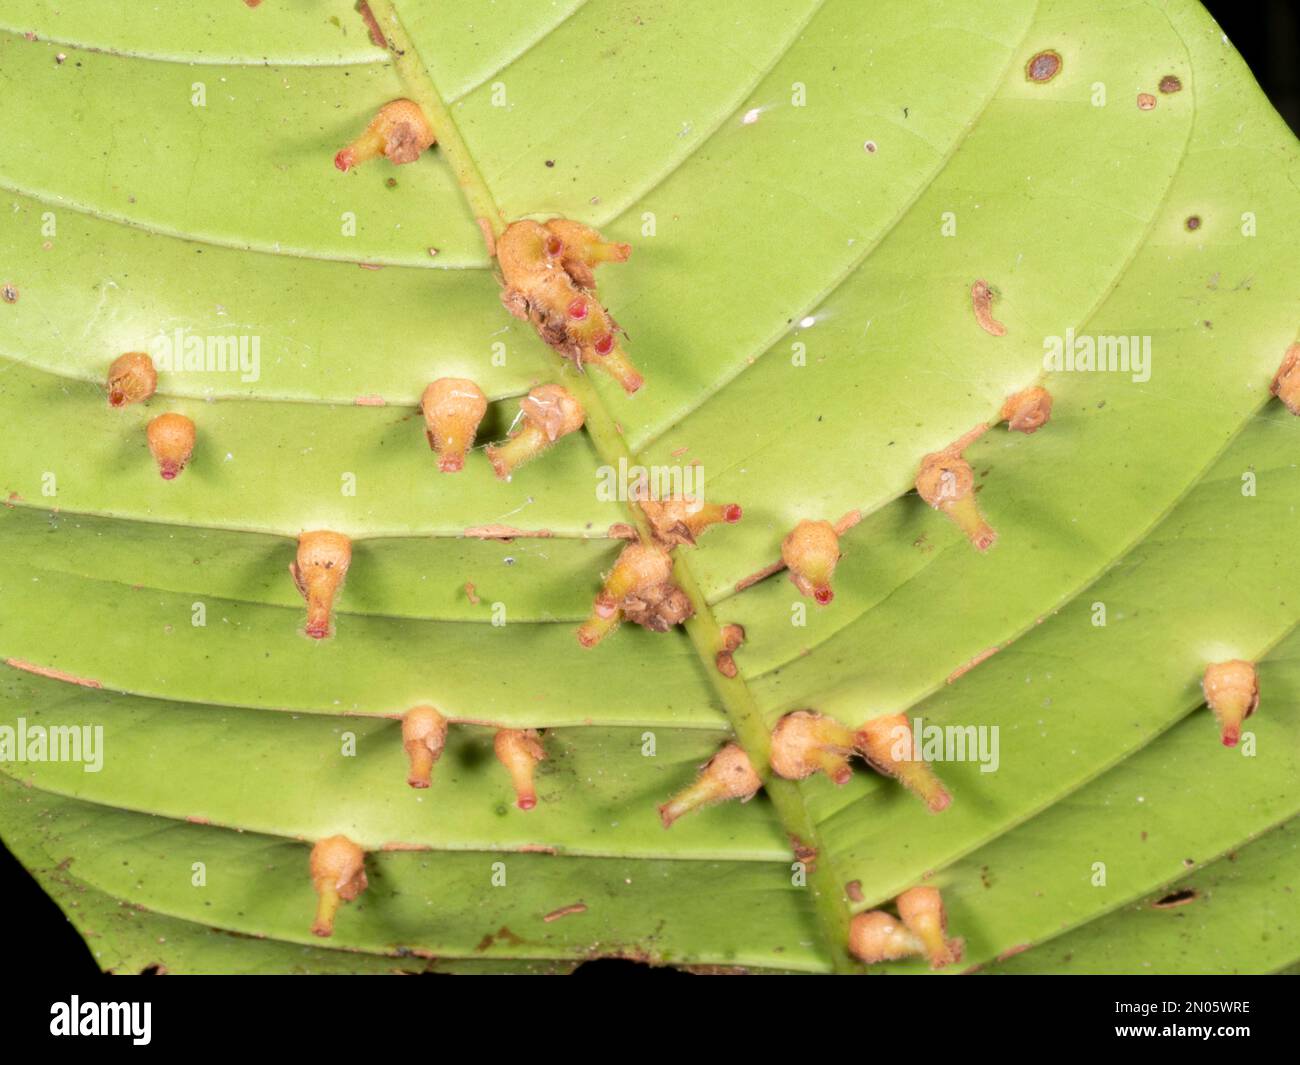 Feuille d'un arbuste de sous-étage recouvert de galettes, résultant d'une attaque d'insectes, de bactéries ou de champignons. Croissance dans la forêt tropicale dans la province d'Orellana, en Équateur Banque D'Images